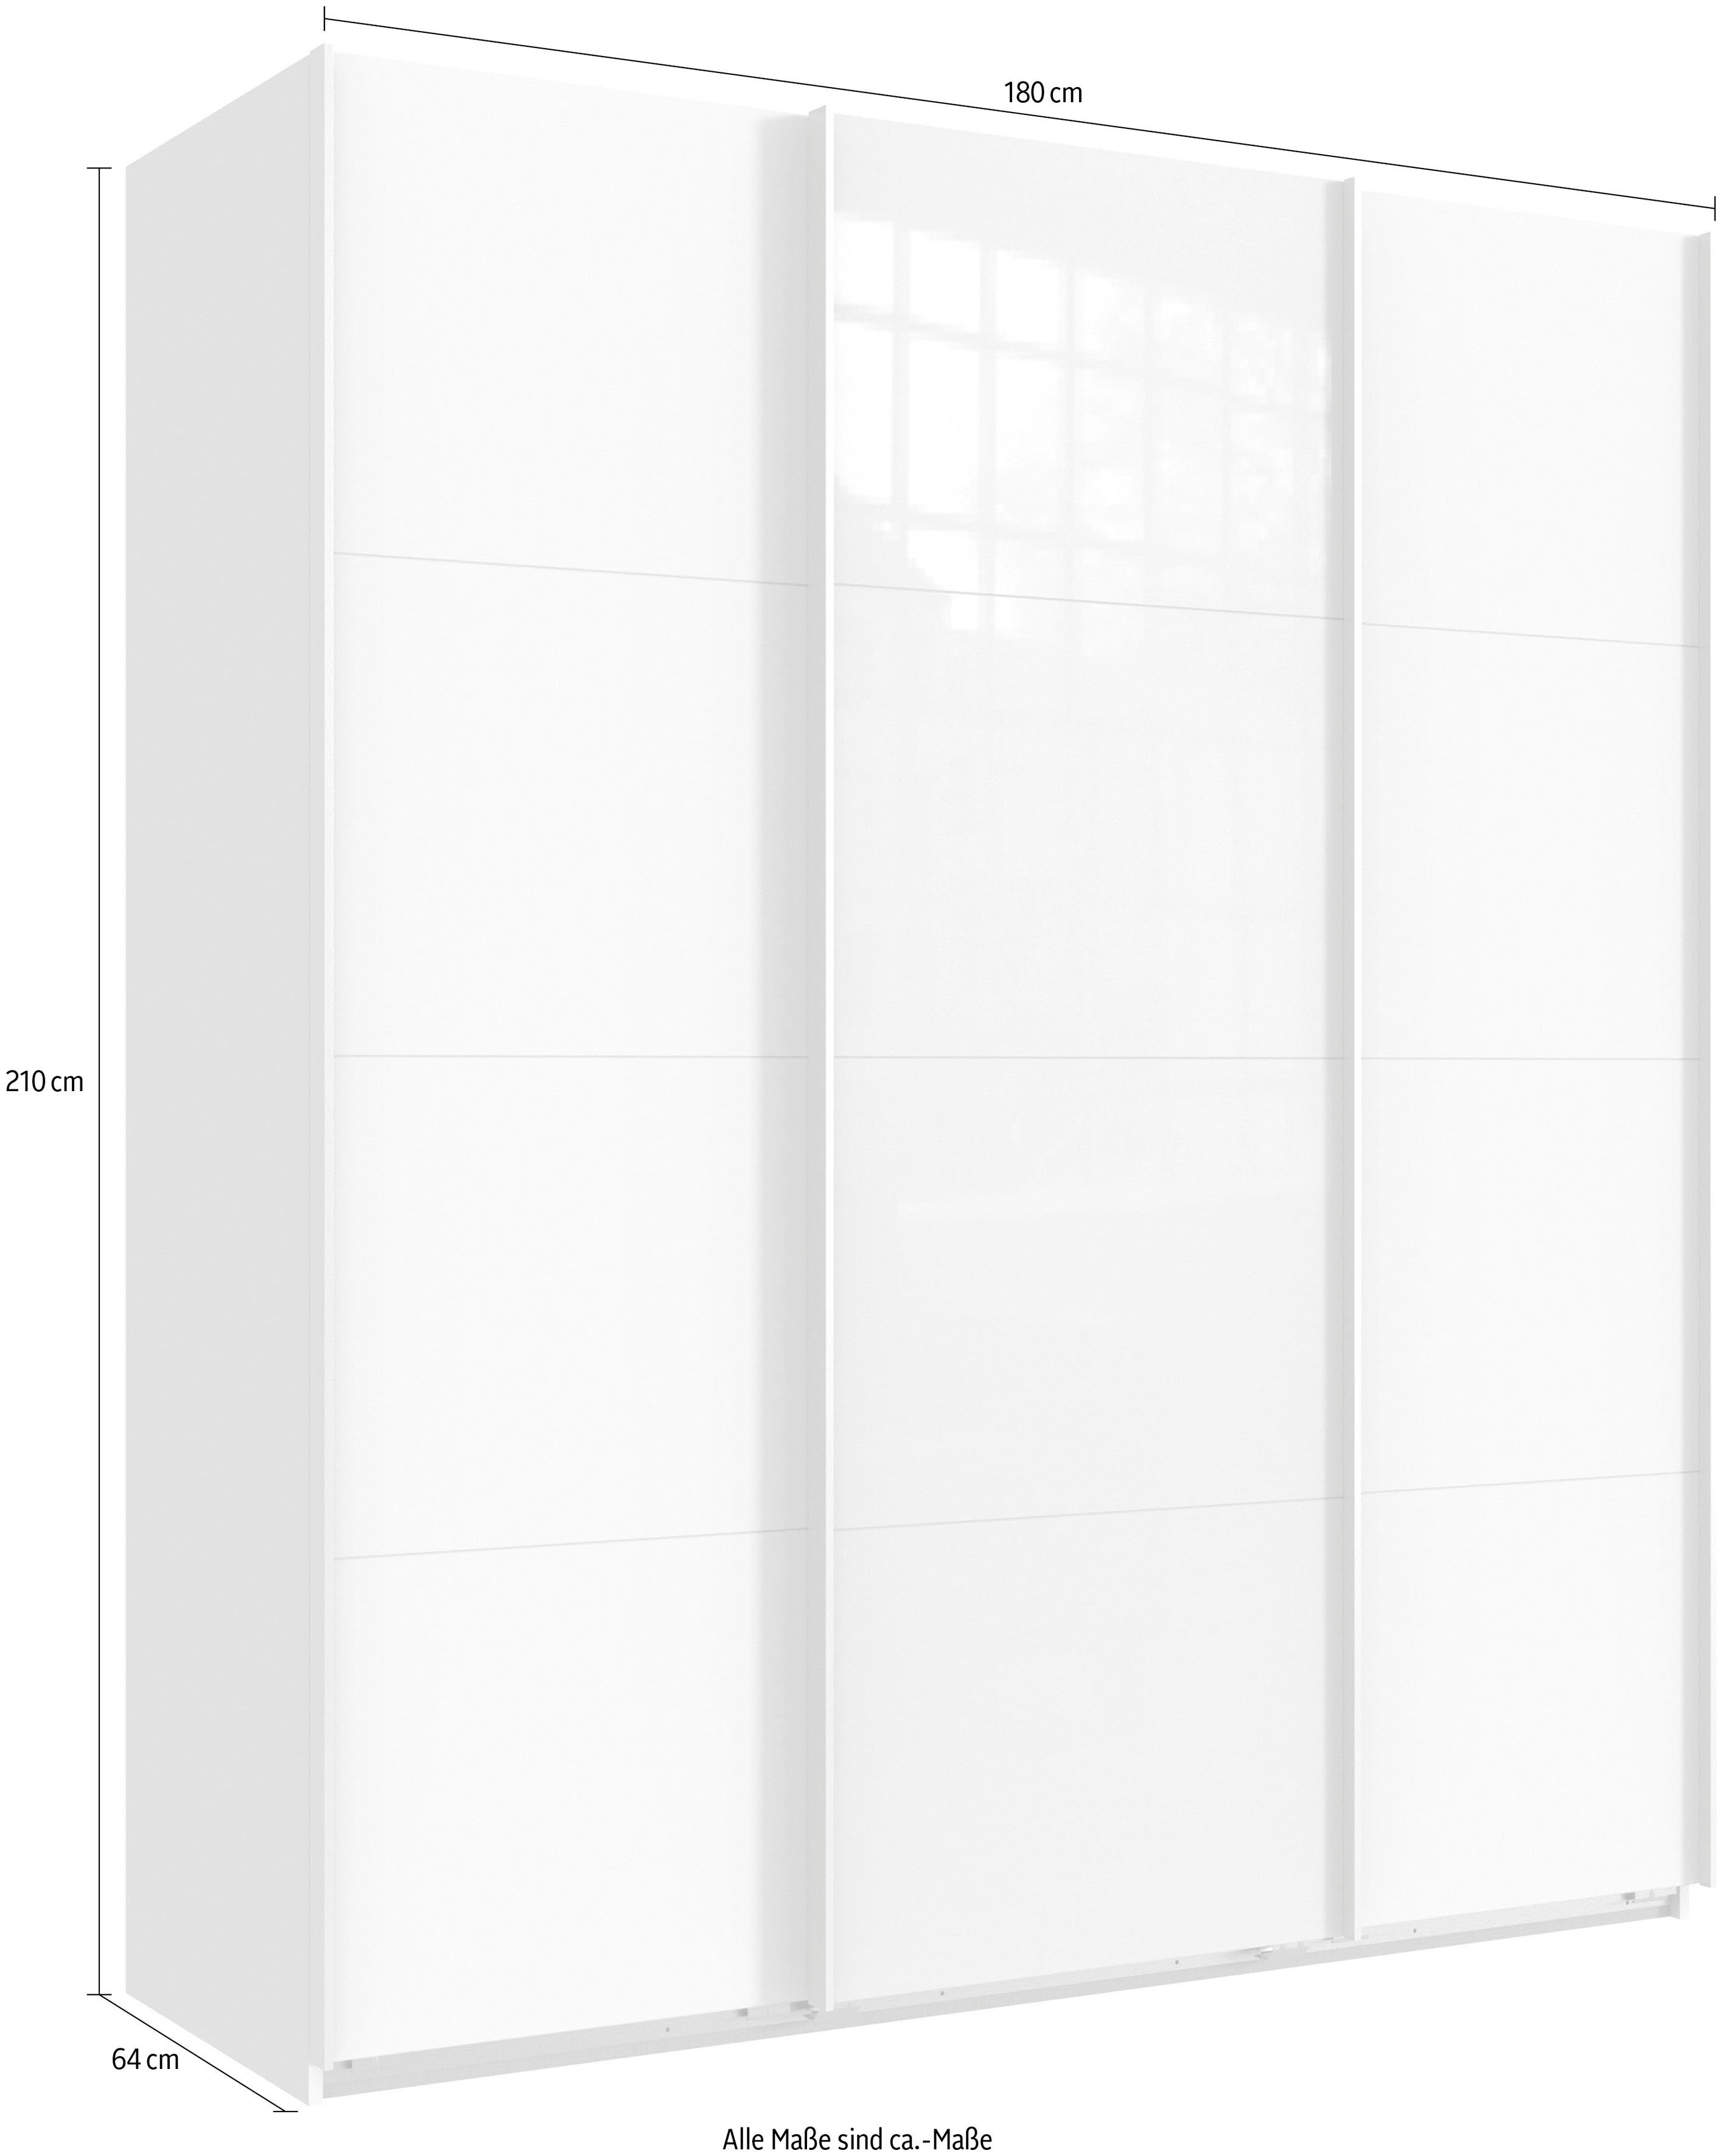 Wimex Glas Norderstedt Schwebetürenschrank Weiß/ Stoffboxen INKLUSIVE Einlegeböden zusätzliche Weiß und schwarz 2 2 |